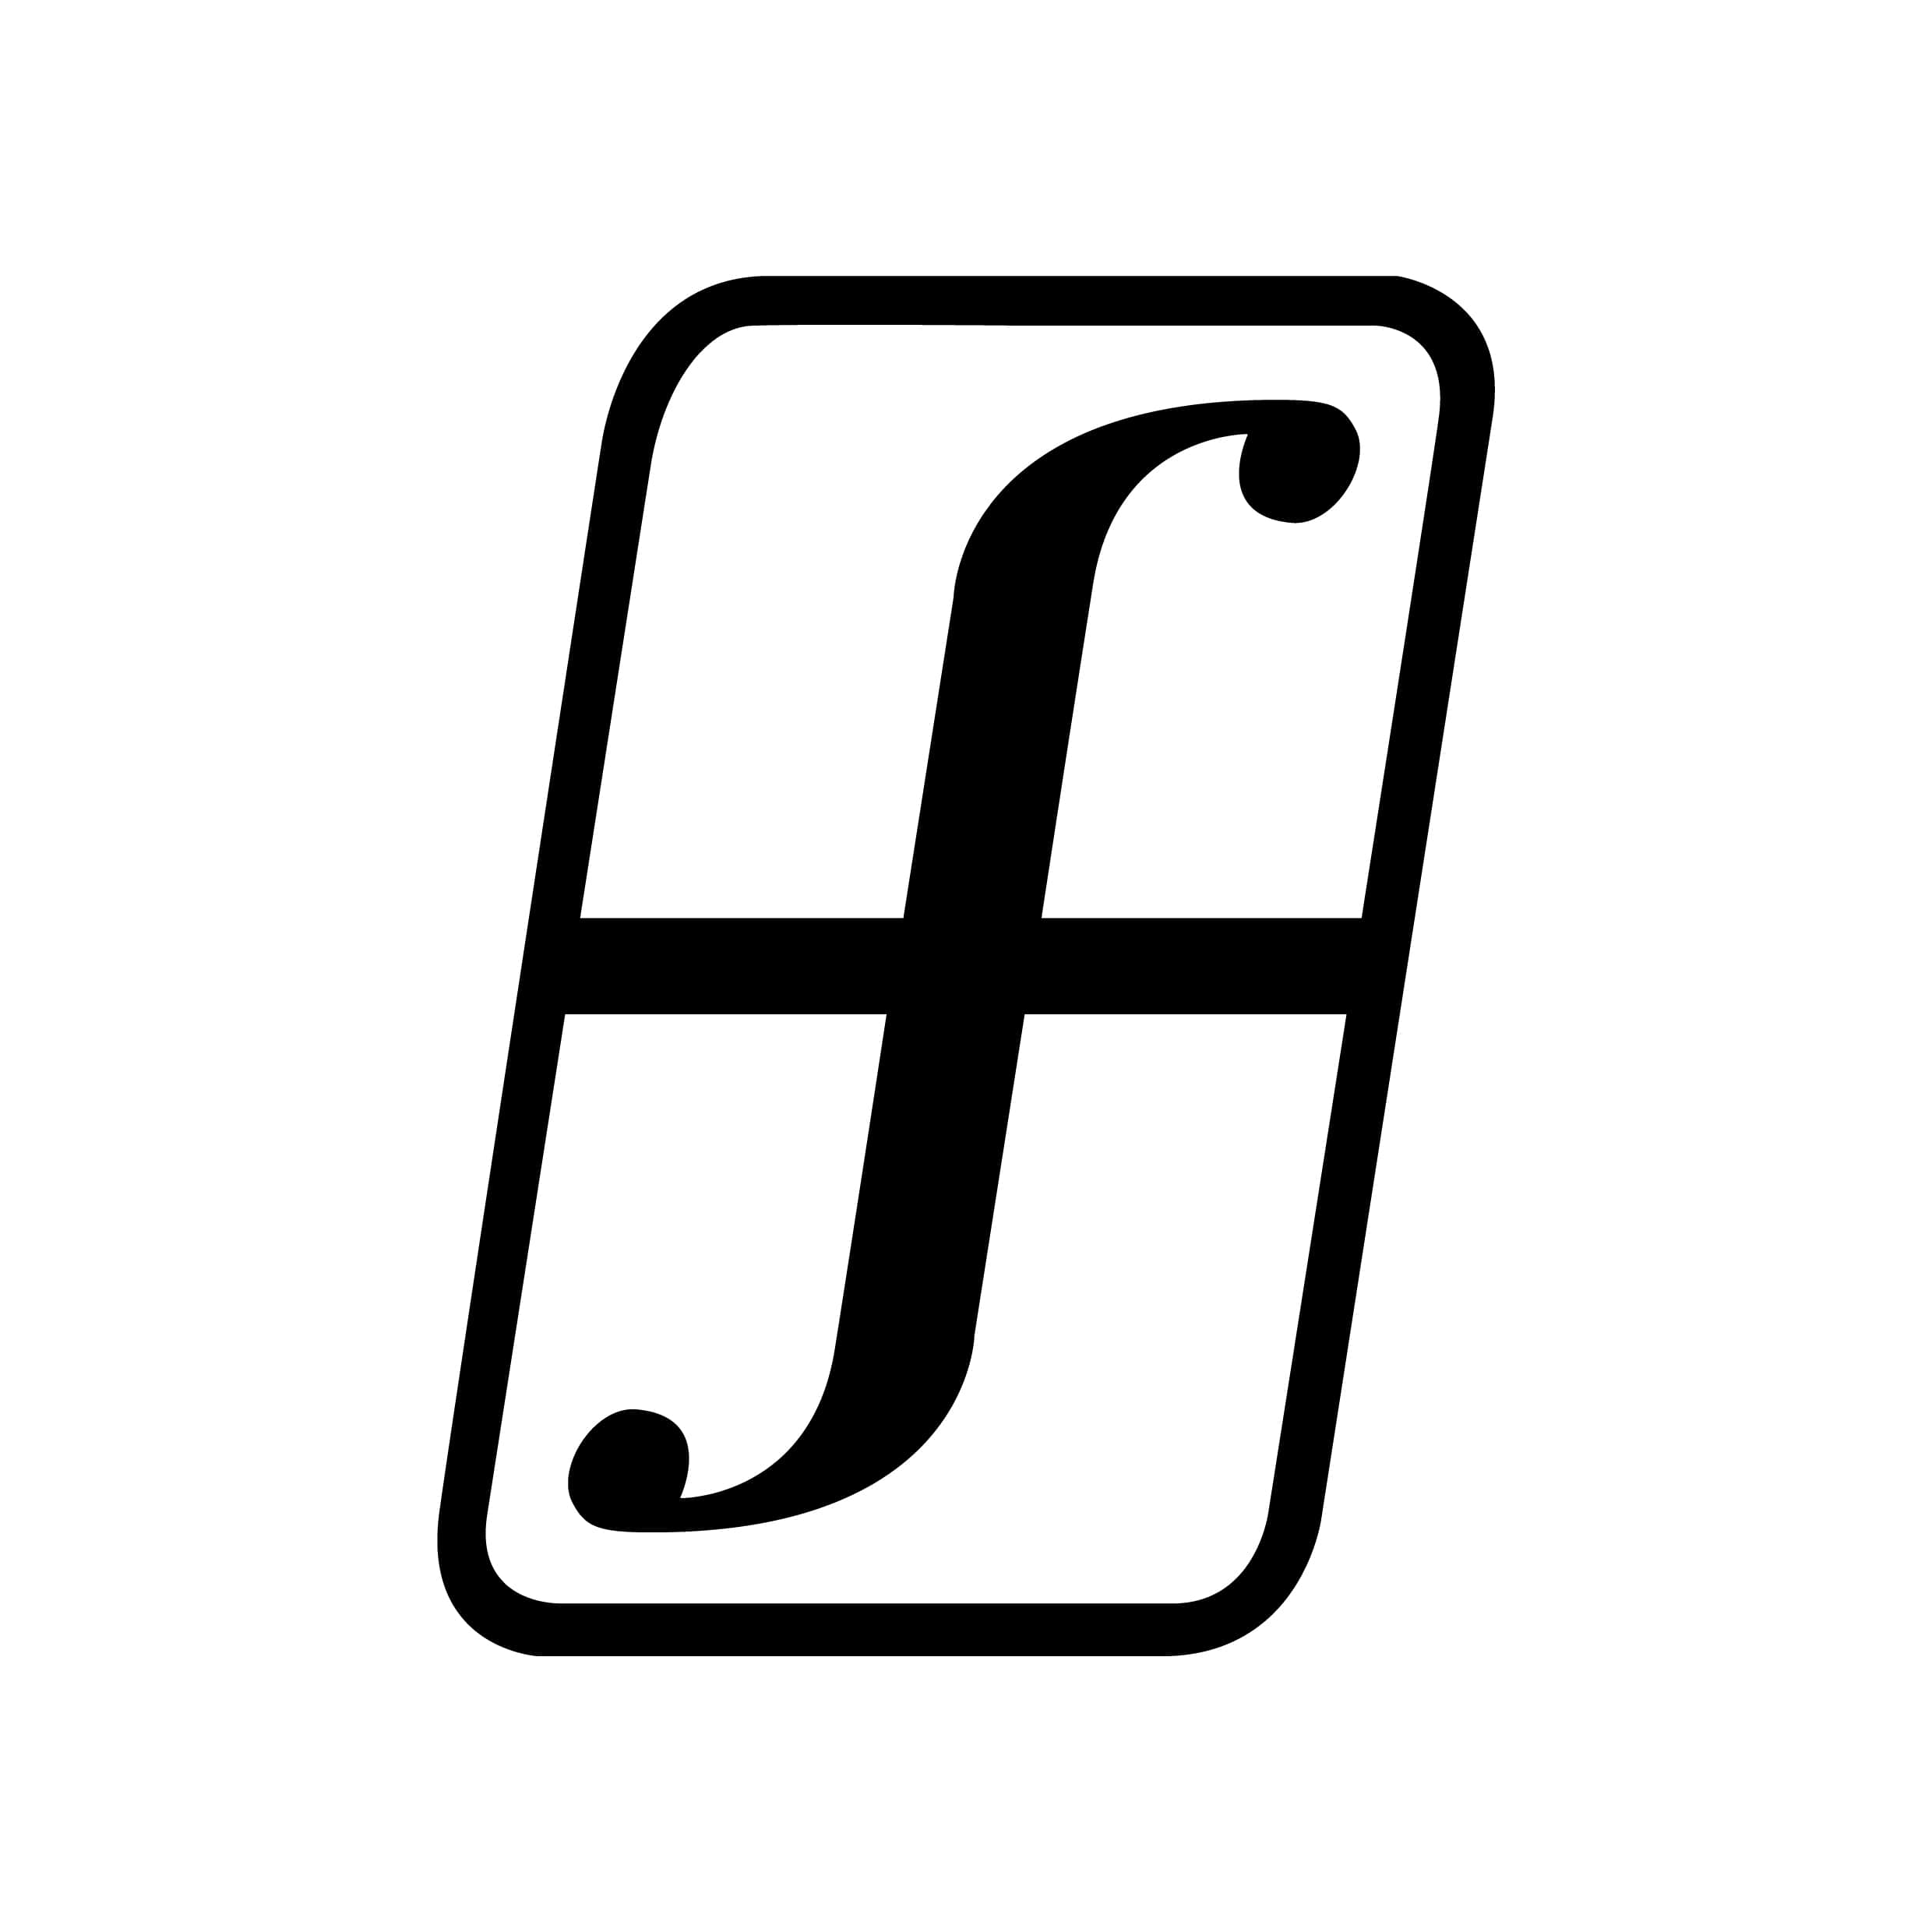 Page sign. Сноуборд forum. Стикеры для форума. Ярлык 8.6. Логотип ref.